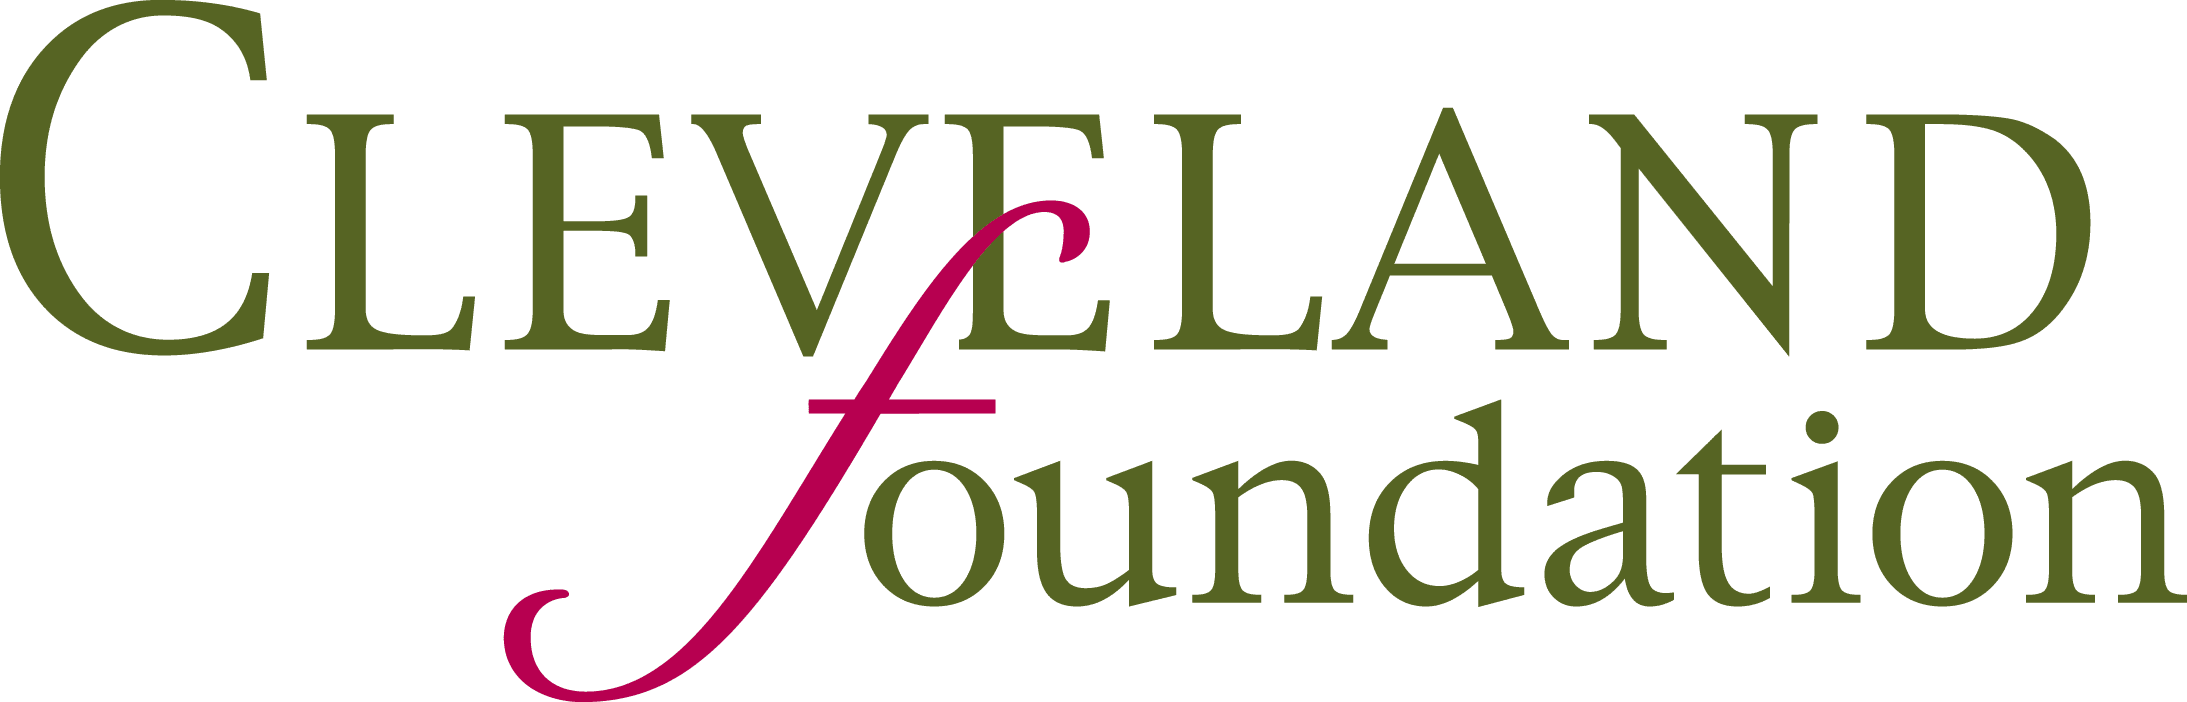 Cleveland Foundation Logo